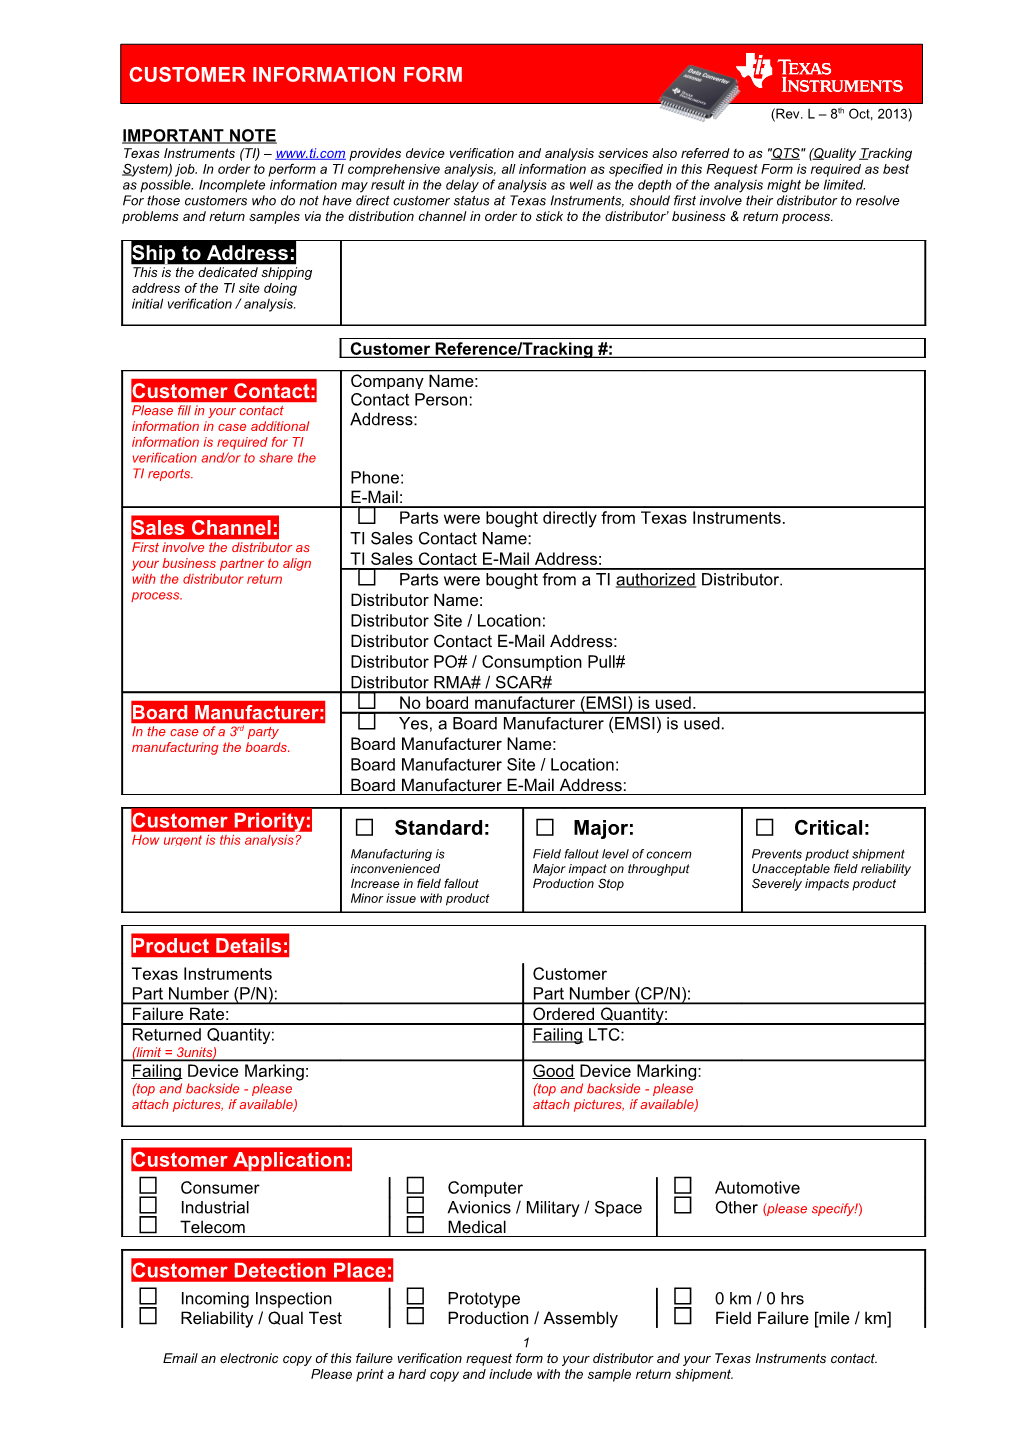 Customer Information Form